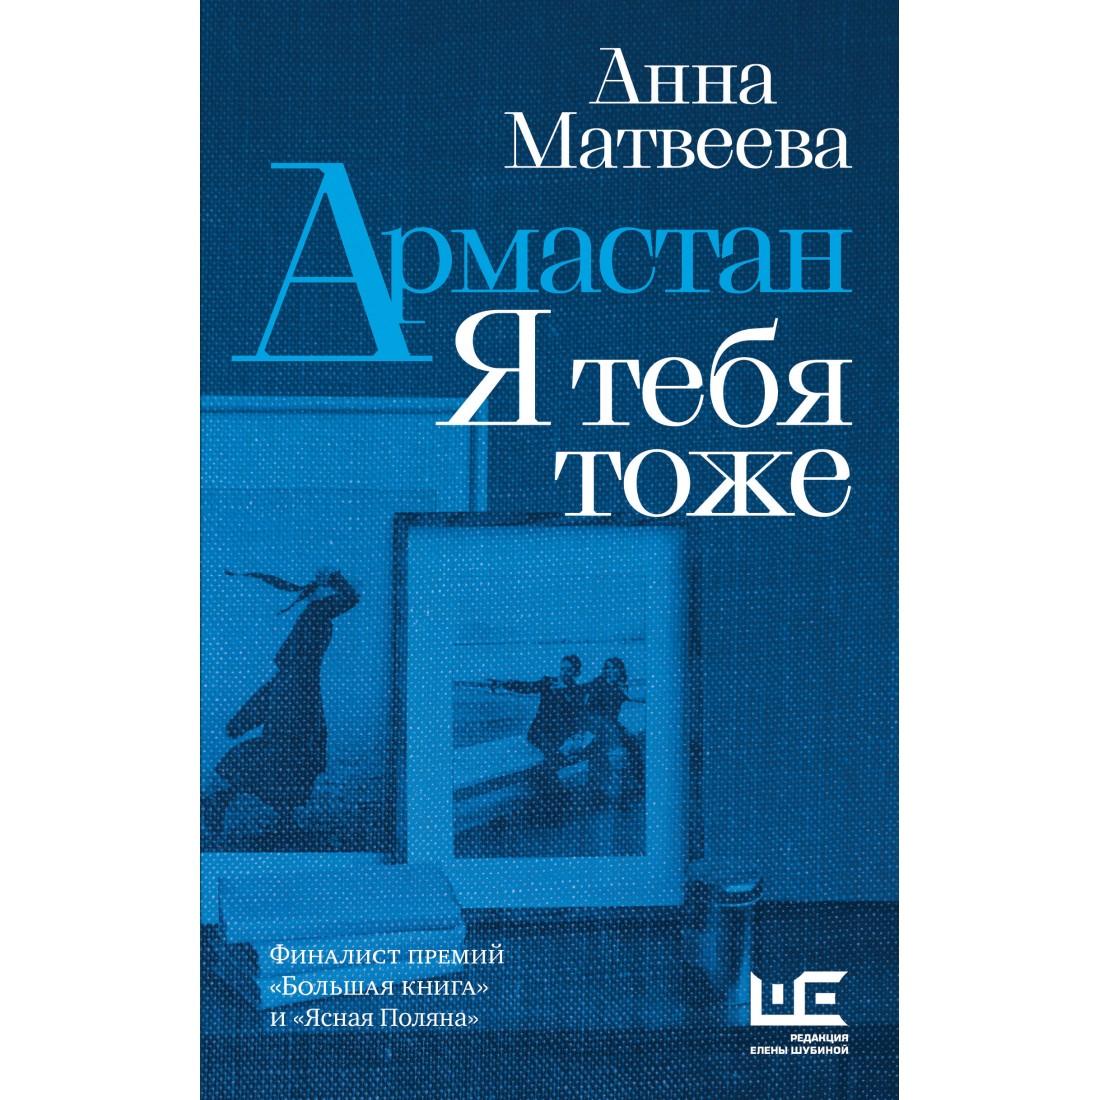 В РГБИ состоится презентация сборника рассказов Анны Матвеевой «Армастан. Я тебя тоже»